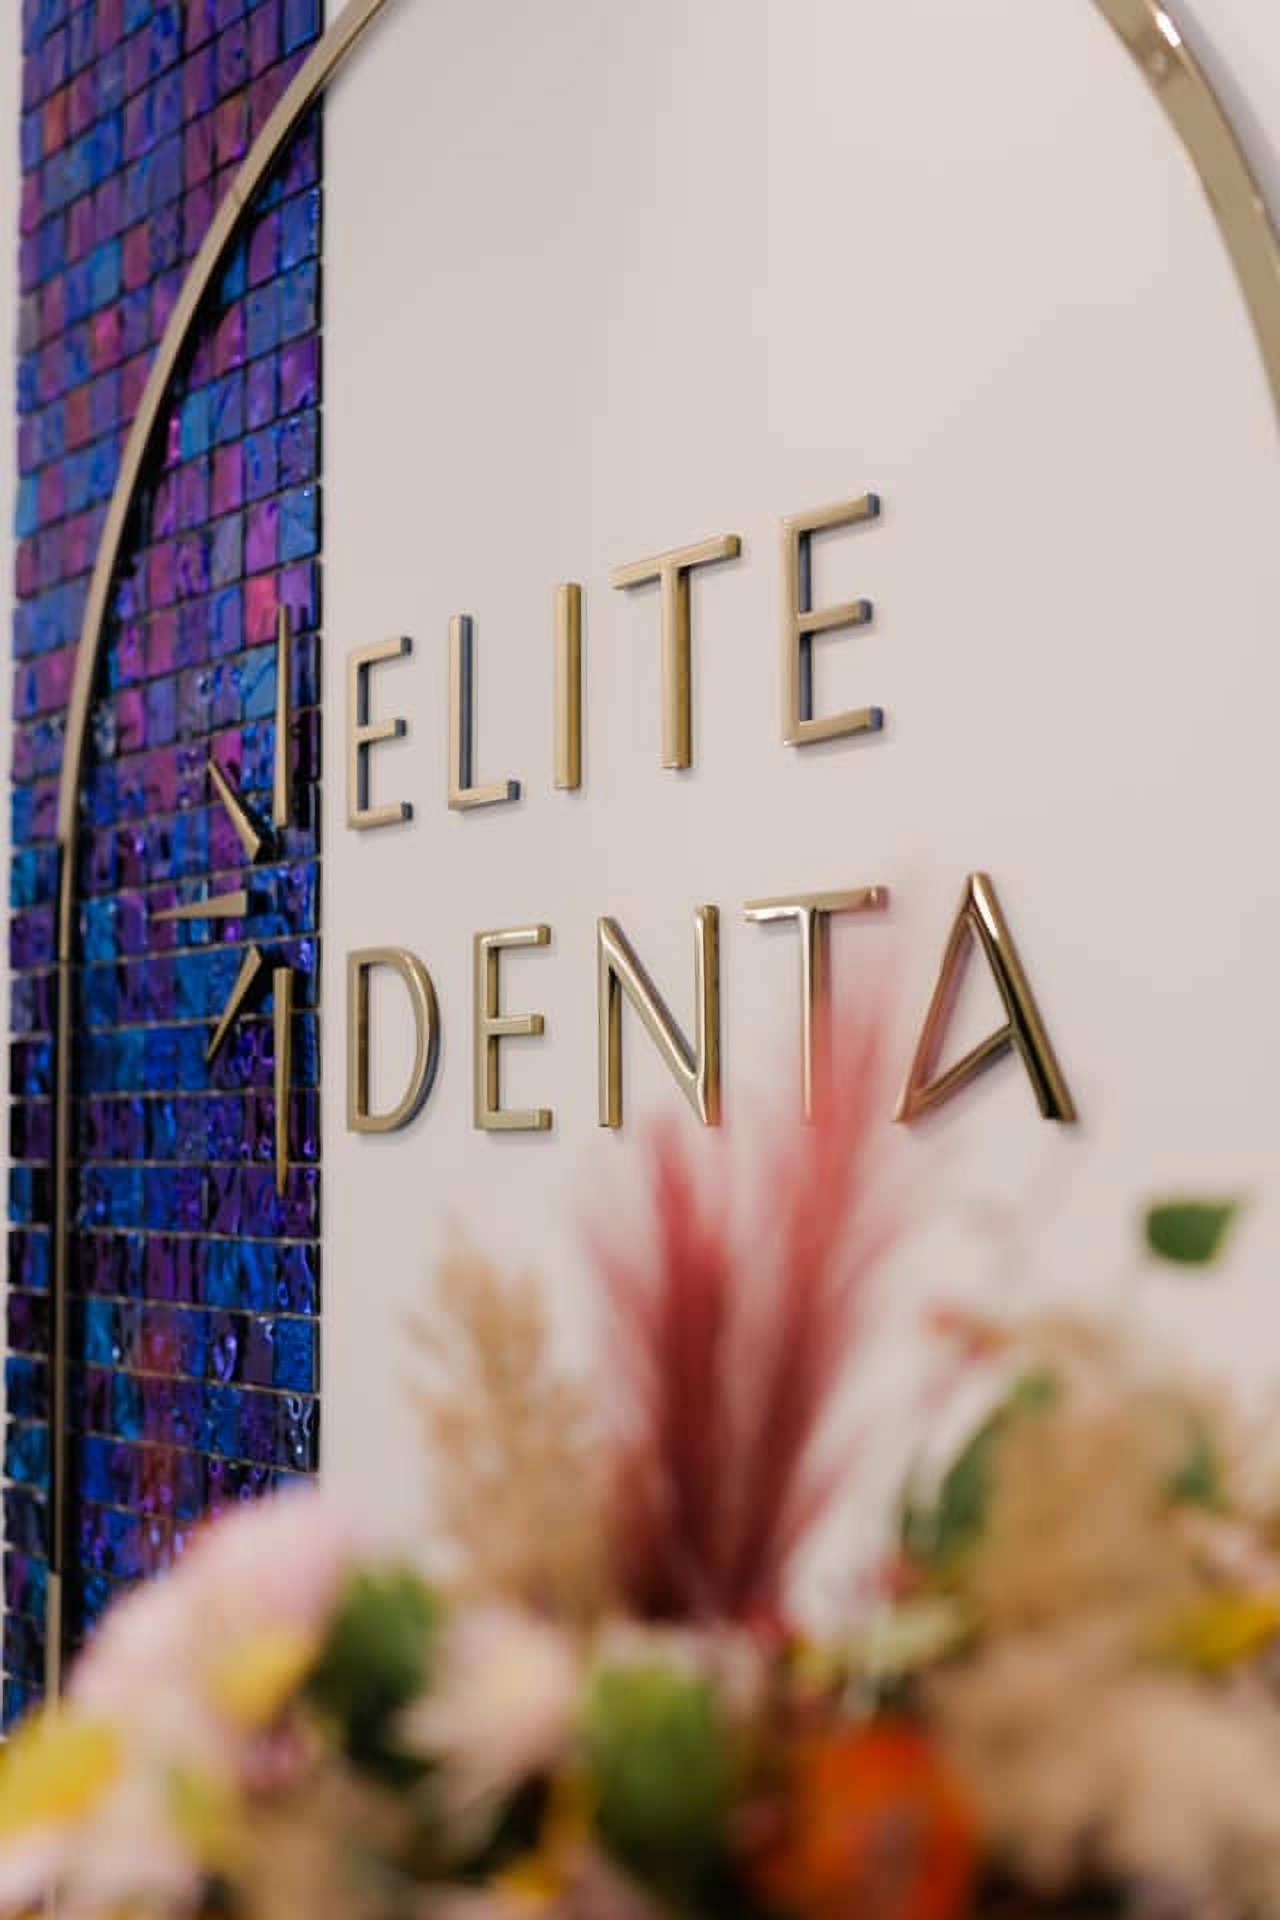 Холл клиники Elite Denta Харьков Украина